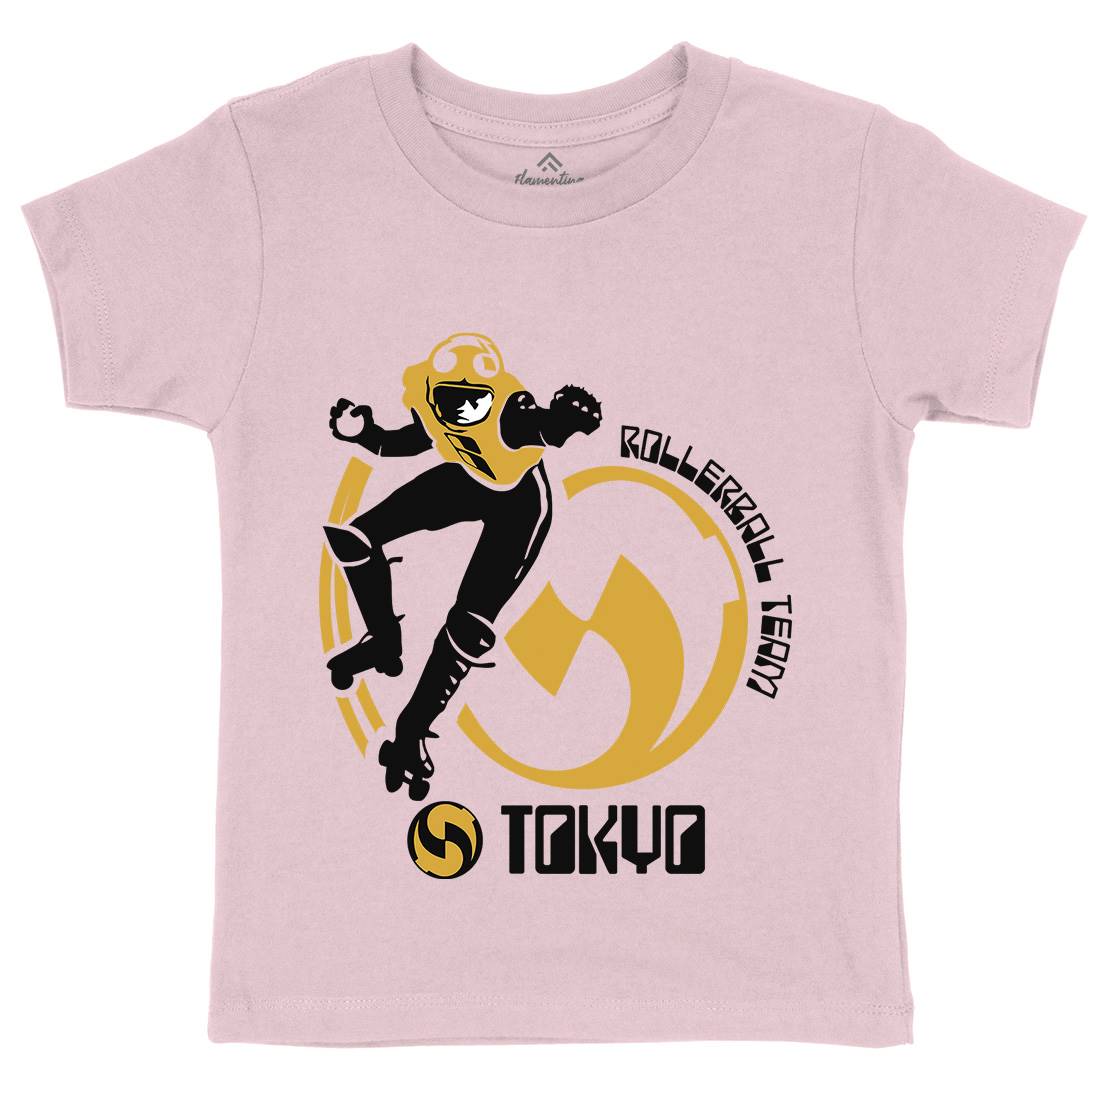 Tokyo Kids Crew Neck T-Shirt Sport D263